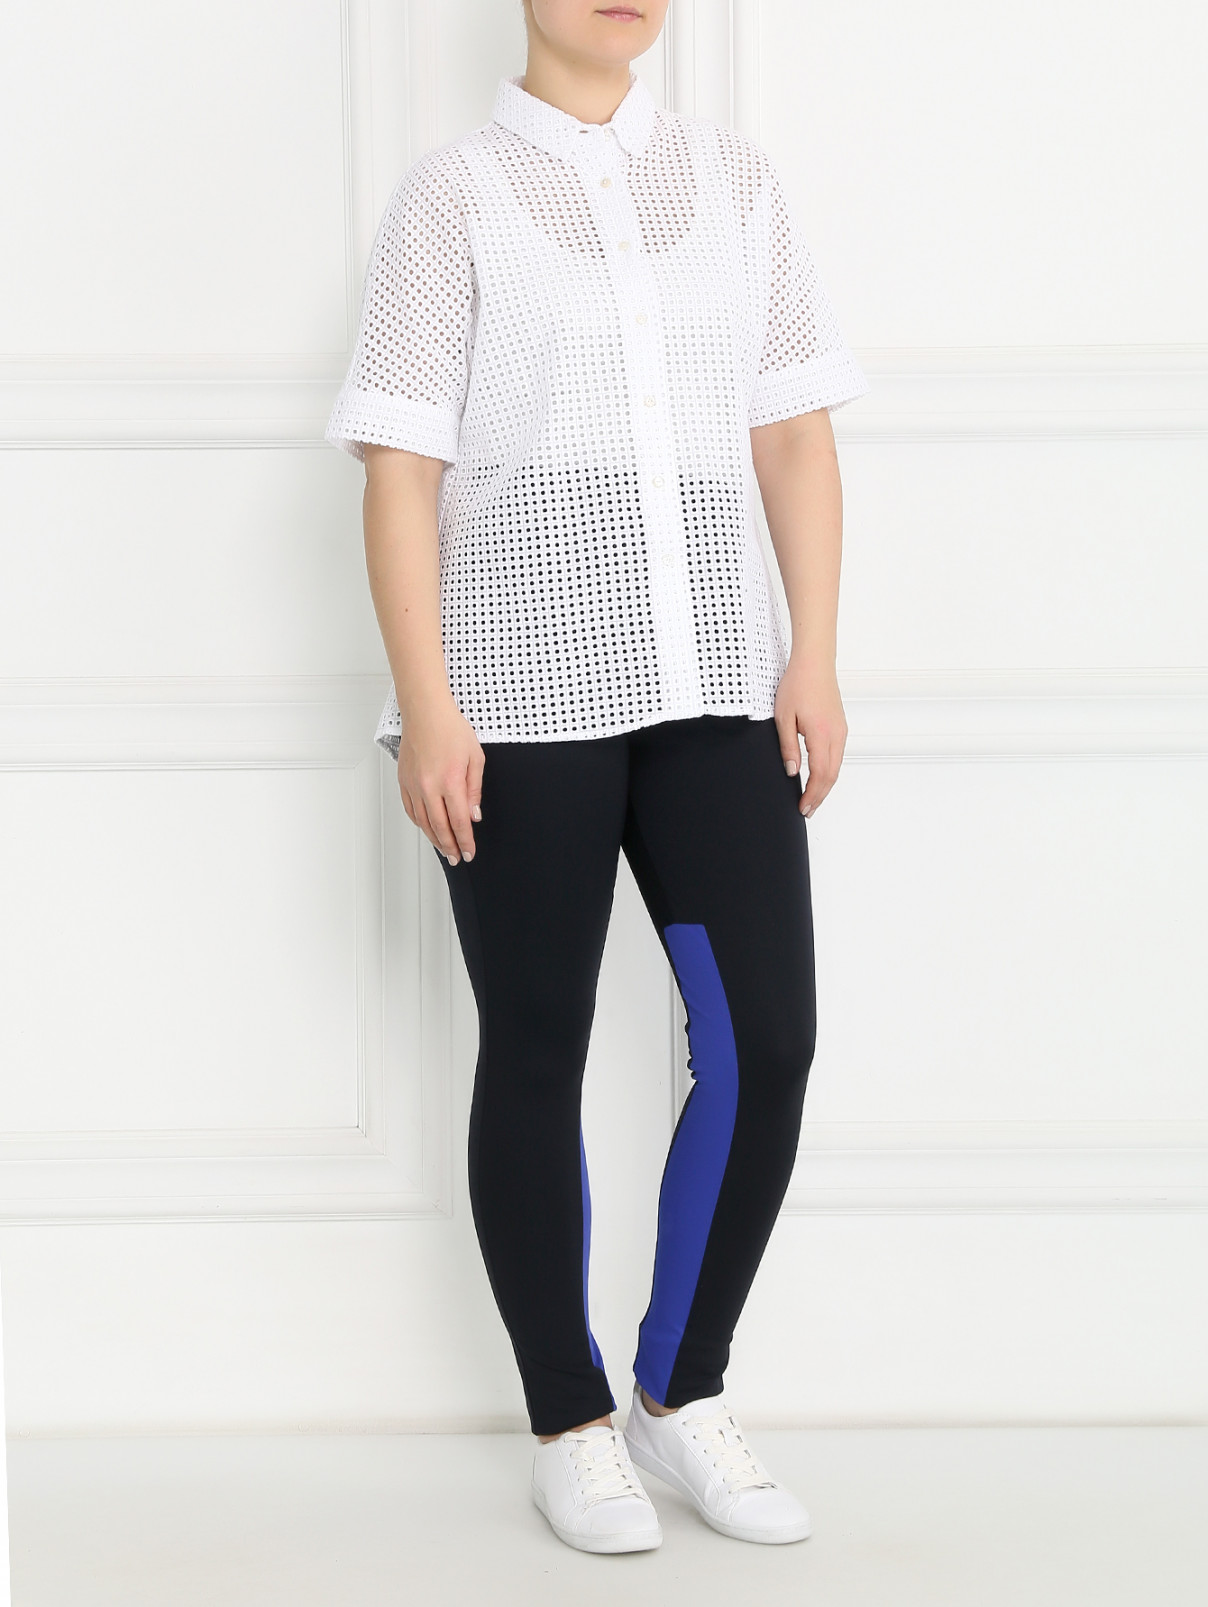 Блуза с коротким рукавом из ткани с перфорацией Marina Sport  –  Модель Общий вид  – Цвет:  Белый